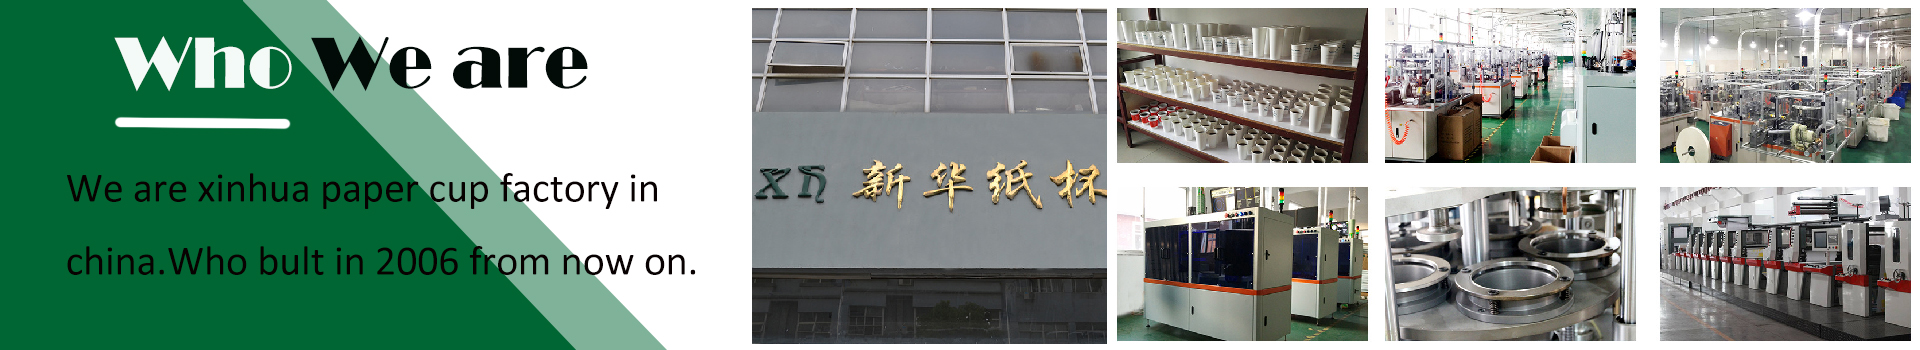 xinhua paper cup factory